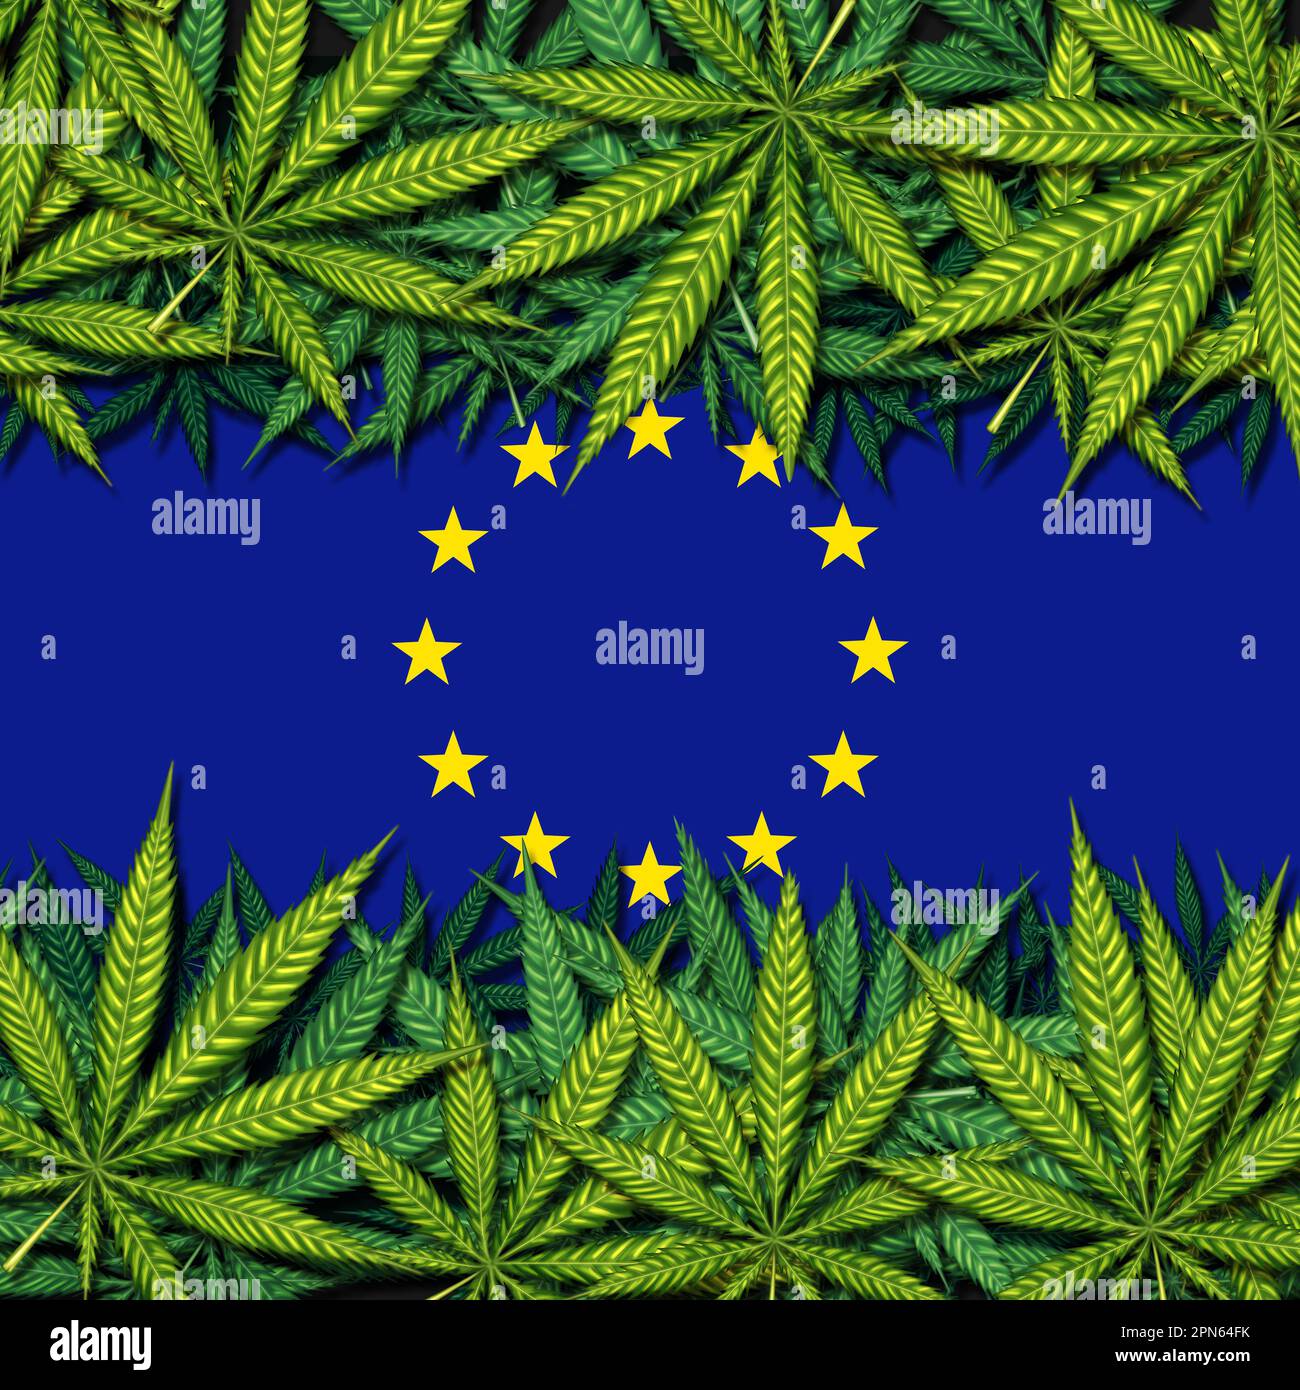 Cannabis europeo e legalizzazione il disegno della Marijuana europea come simbolo dell'erbaccia medica per il vasetto medicinale come simbolo della legislazione dell'Unione europea in materia di droga Foto Stock